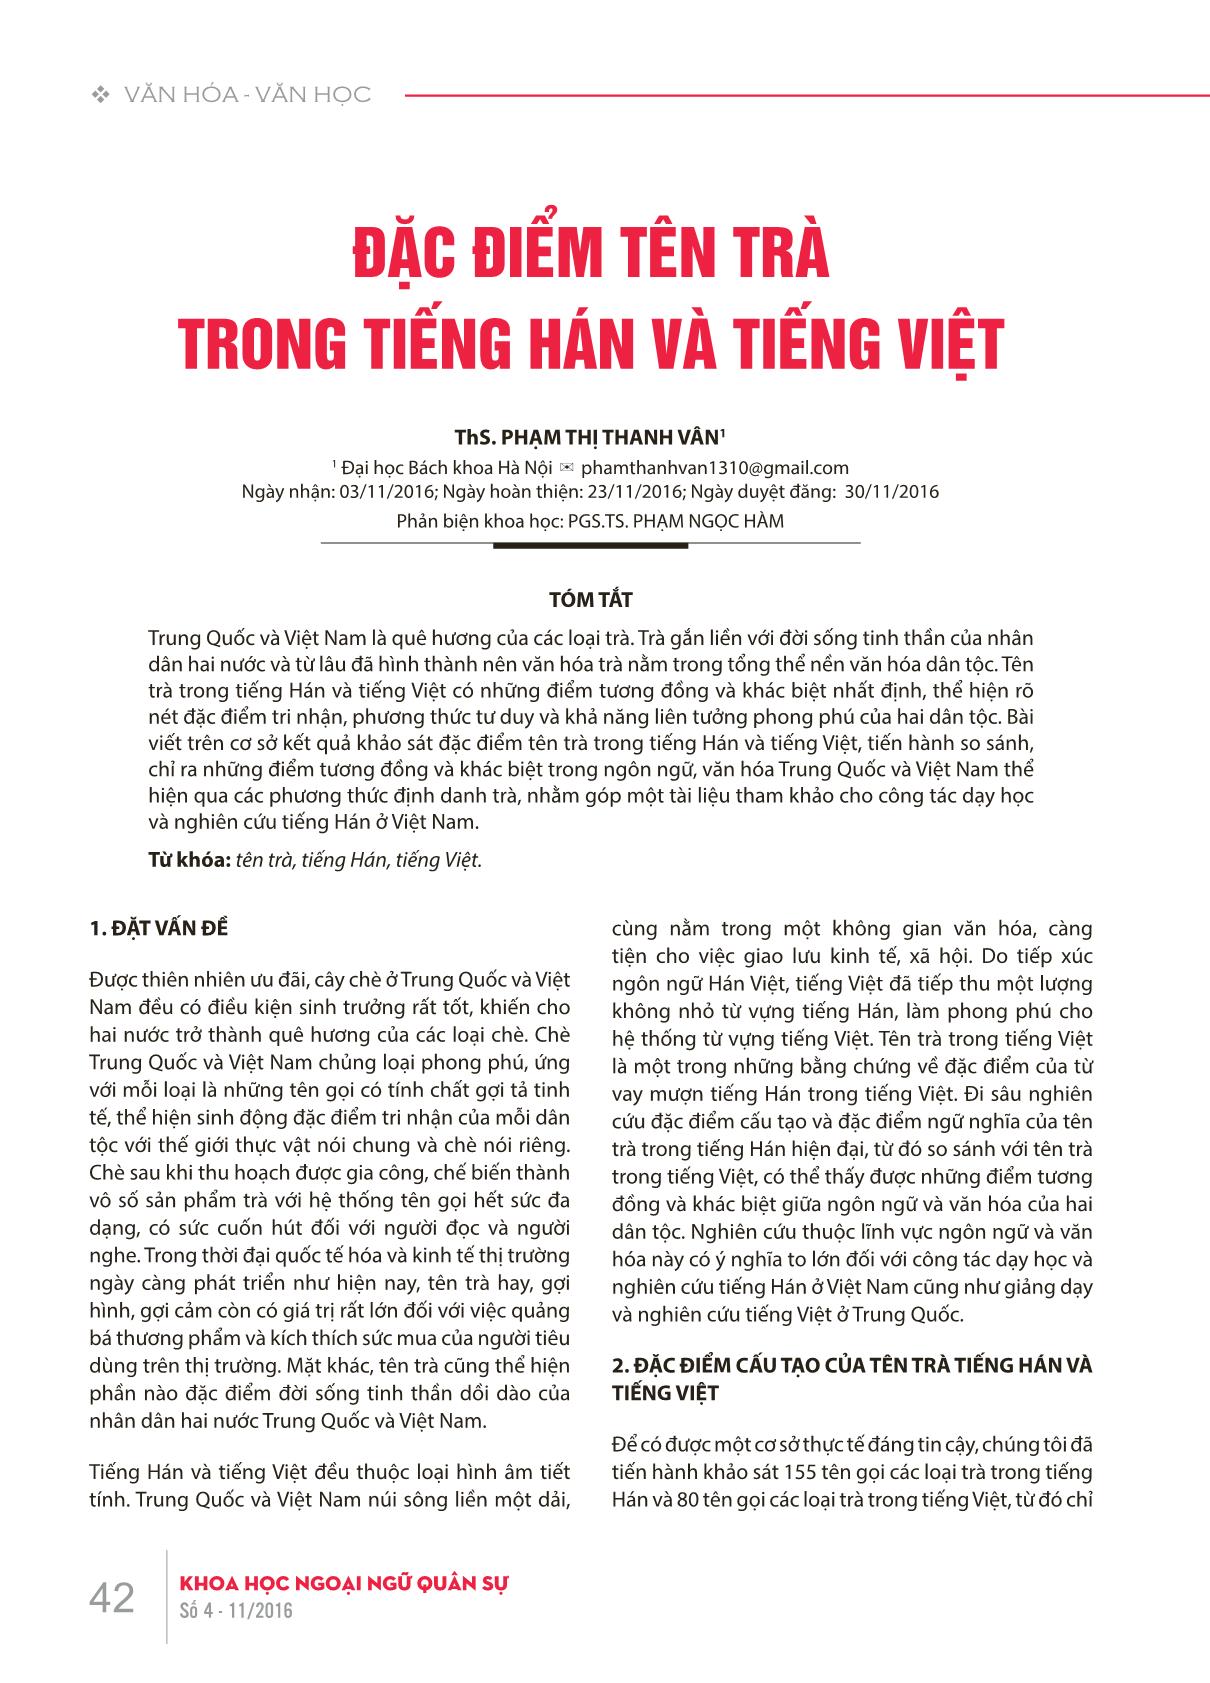 Đặc điểm tên trà trong tiếng Hán và tiếng Việt trang 1